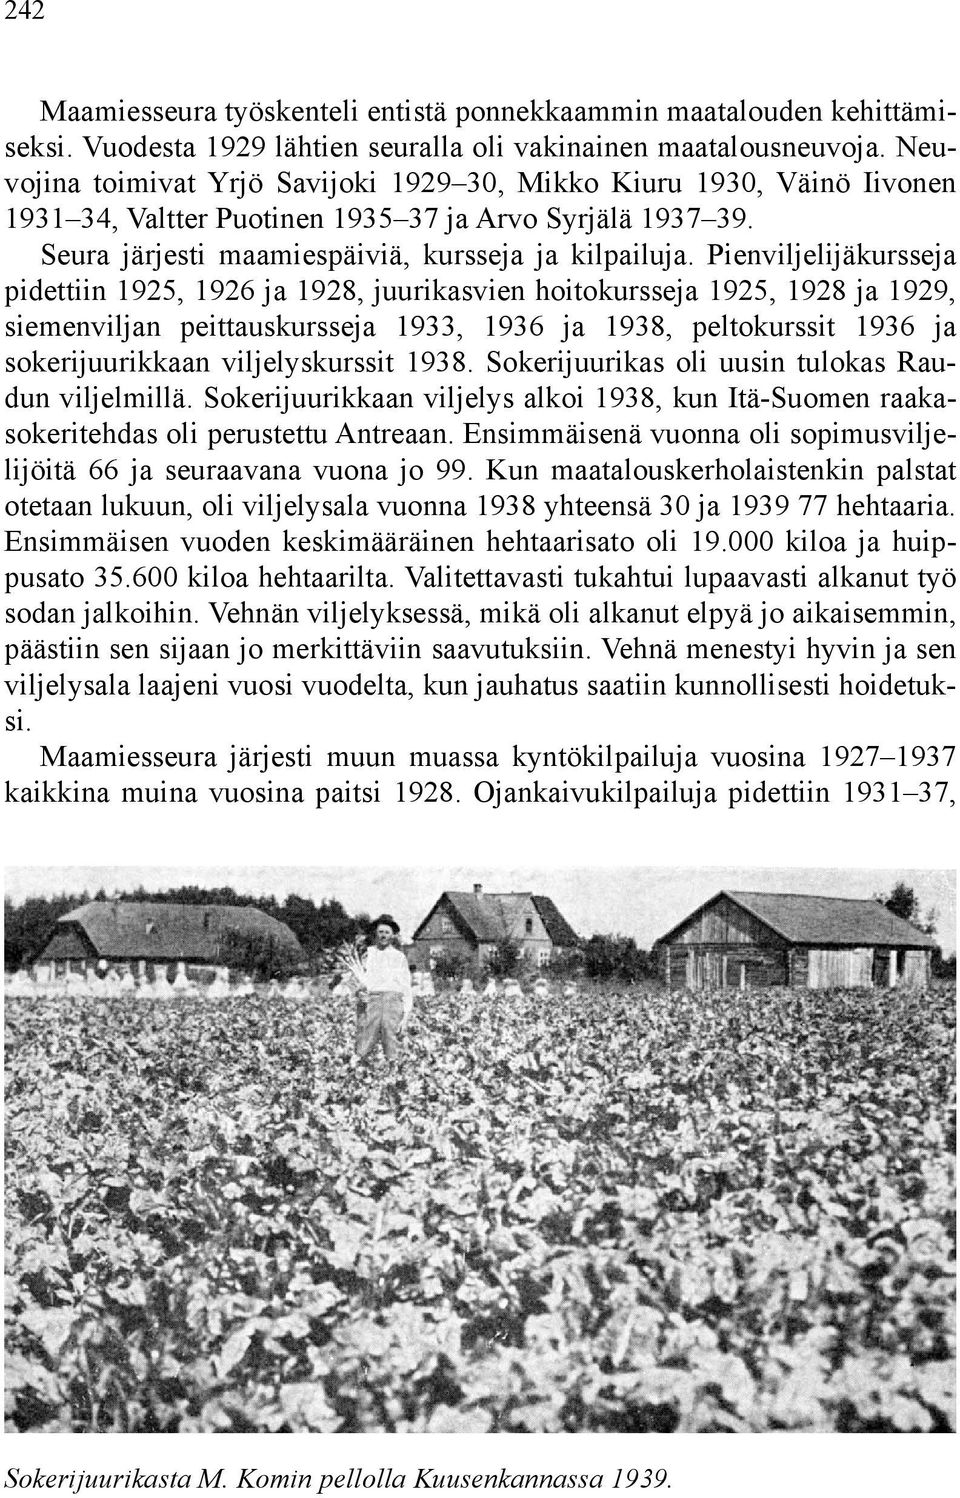 Pienviljelijäkursseja pidettiin 1925, 1926 ja 1928, juurikasvien hoitokursseja 1925, 1928 ja 1929, siemenviljan peittauskursseja 1933, 1936 ja 1938, peltokurssit 1936 ja sokerijuurikkaan